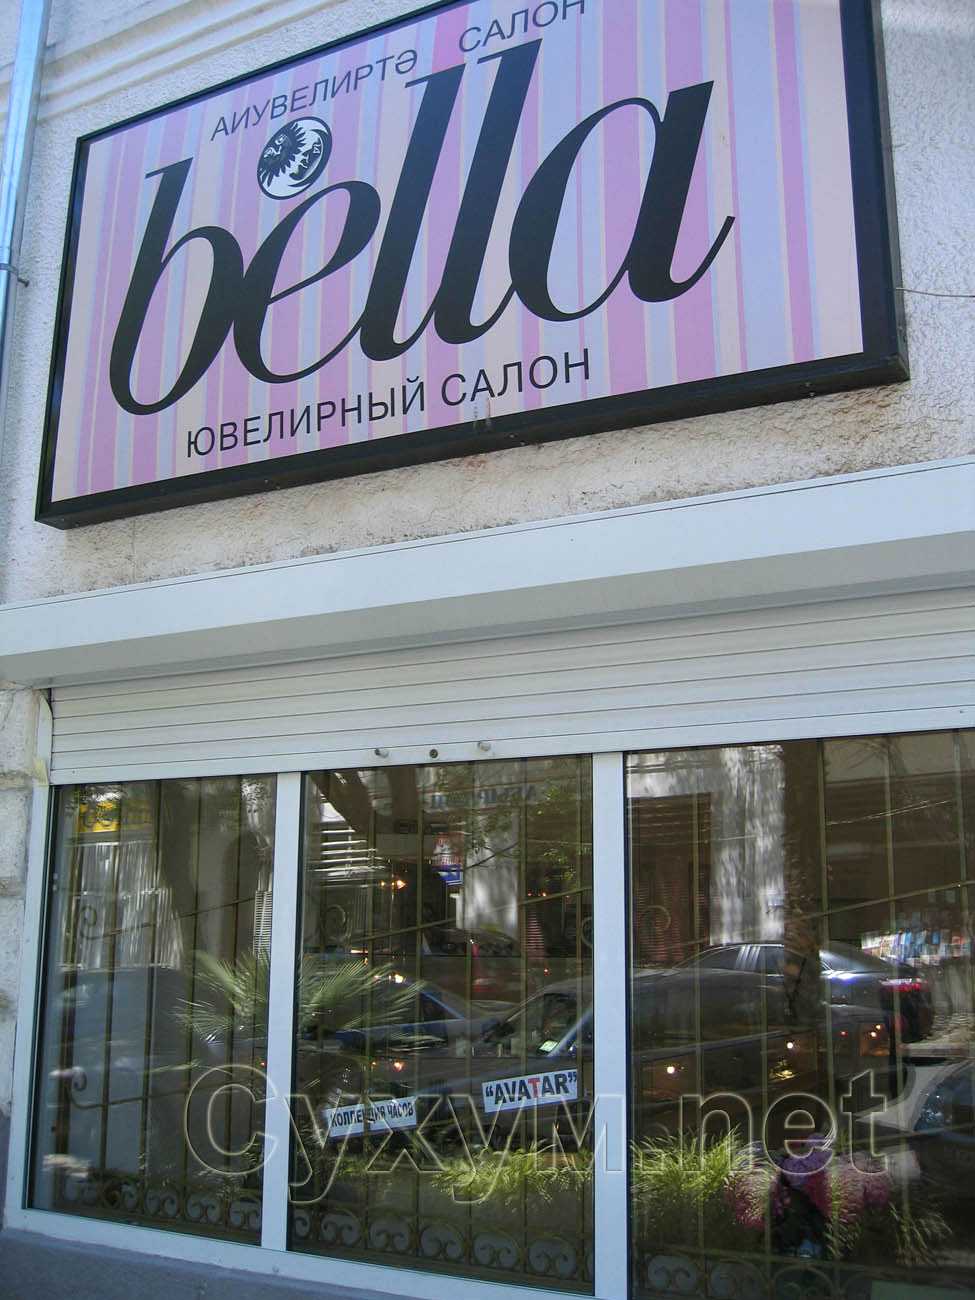 ювелирный салон bella - вывеска и витрина салона